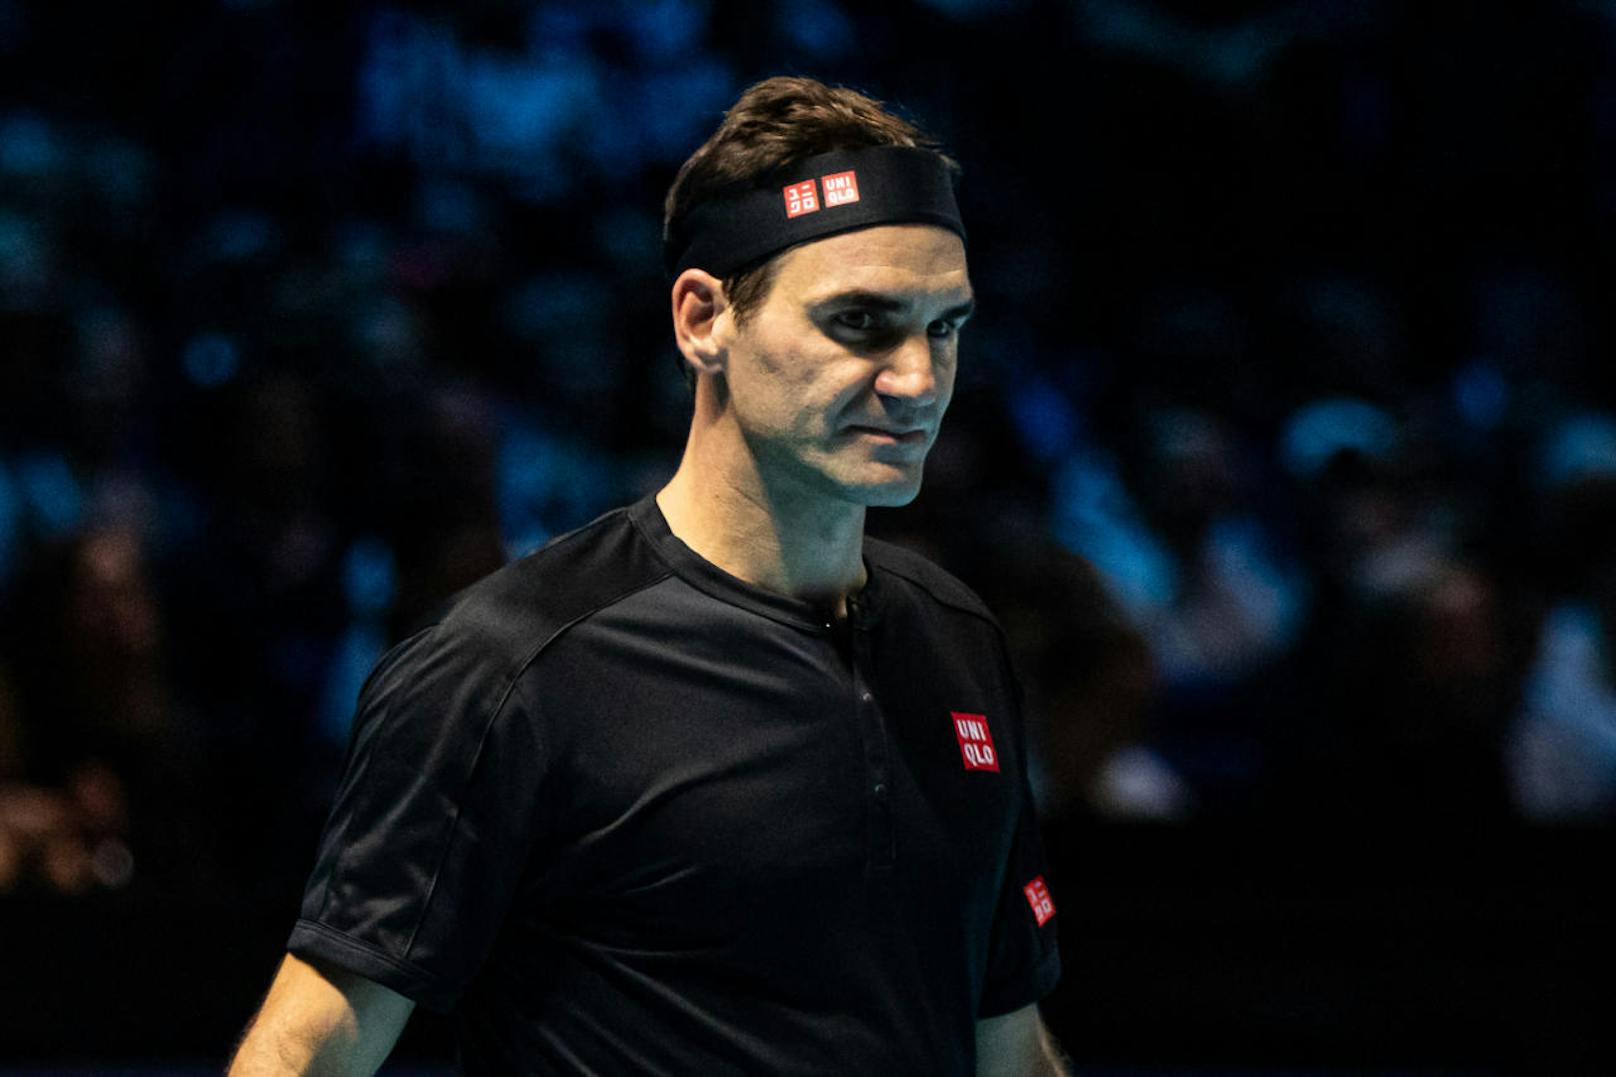 2016 hatte sich Roger Federer nach seiner Halbfinal-Niederlage bei den Australian Open am Knie verletzt, als er gerade das Badewasser für seine Zwillinge einlassen wollte. 